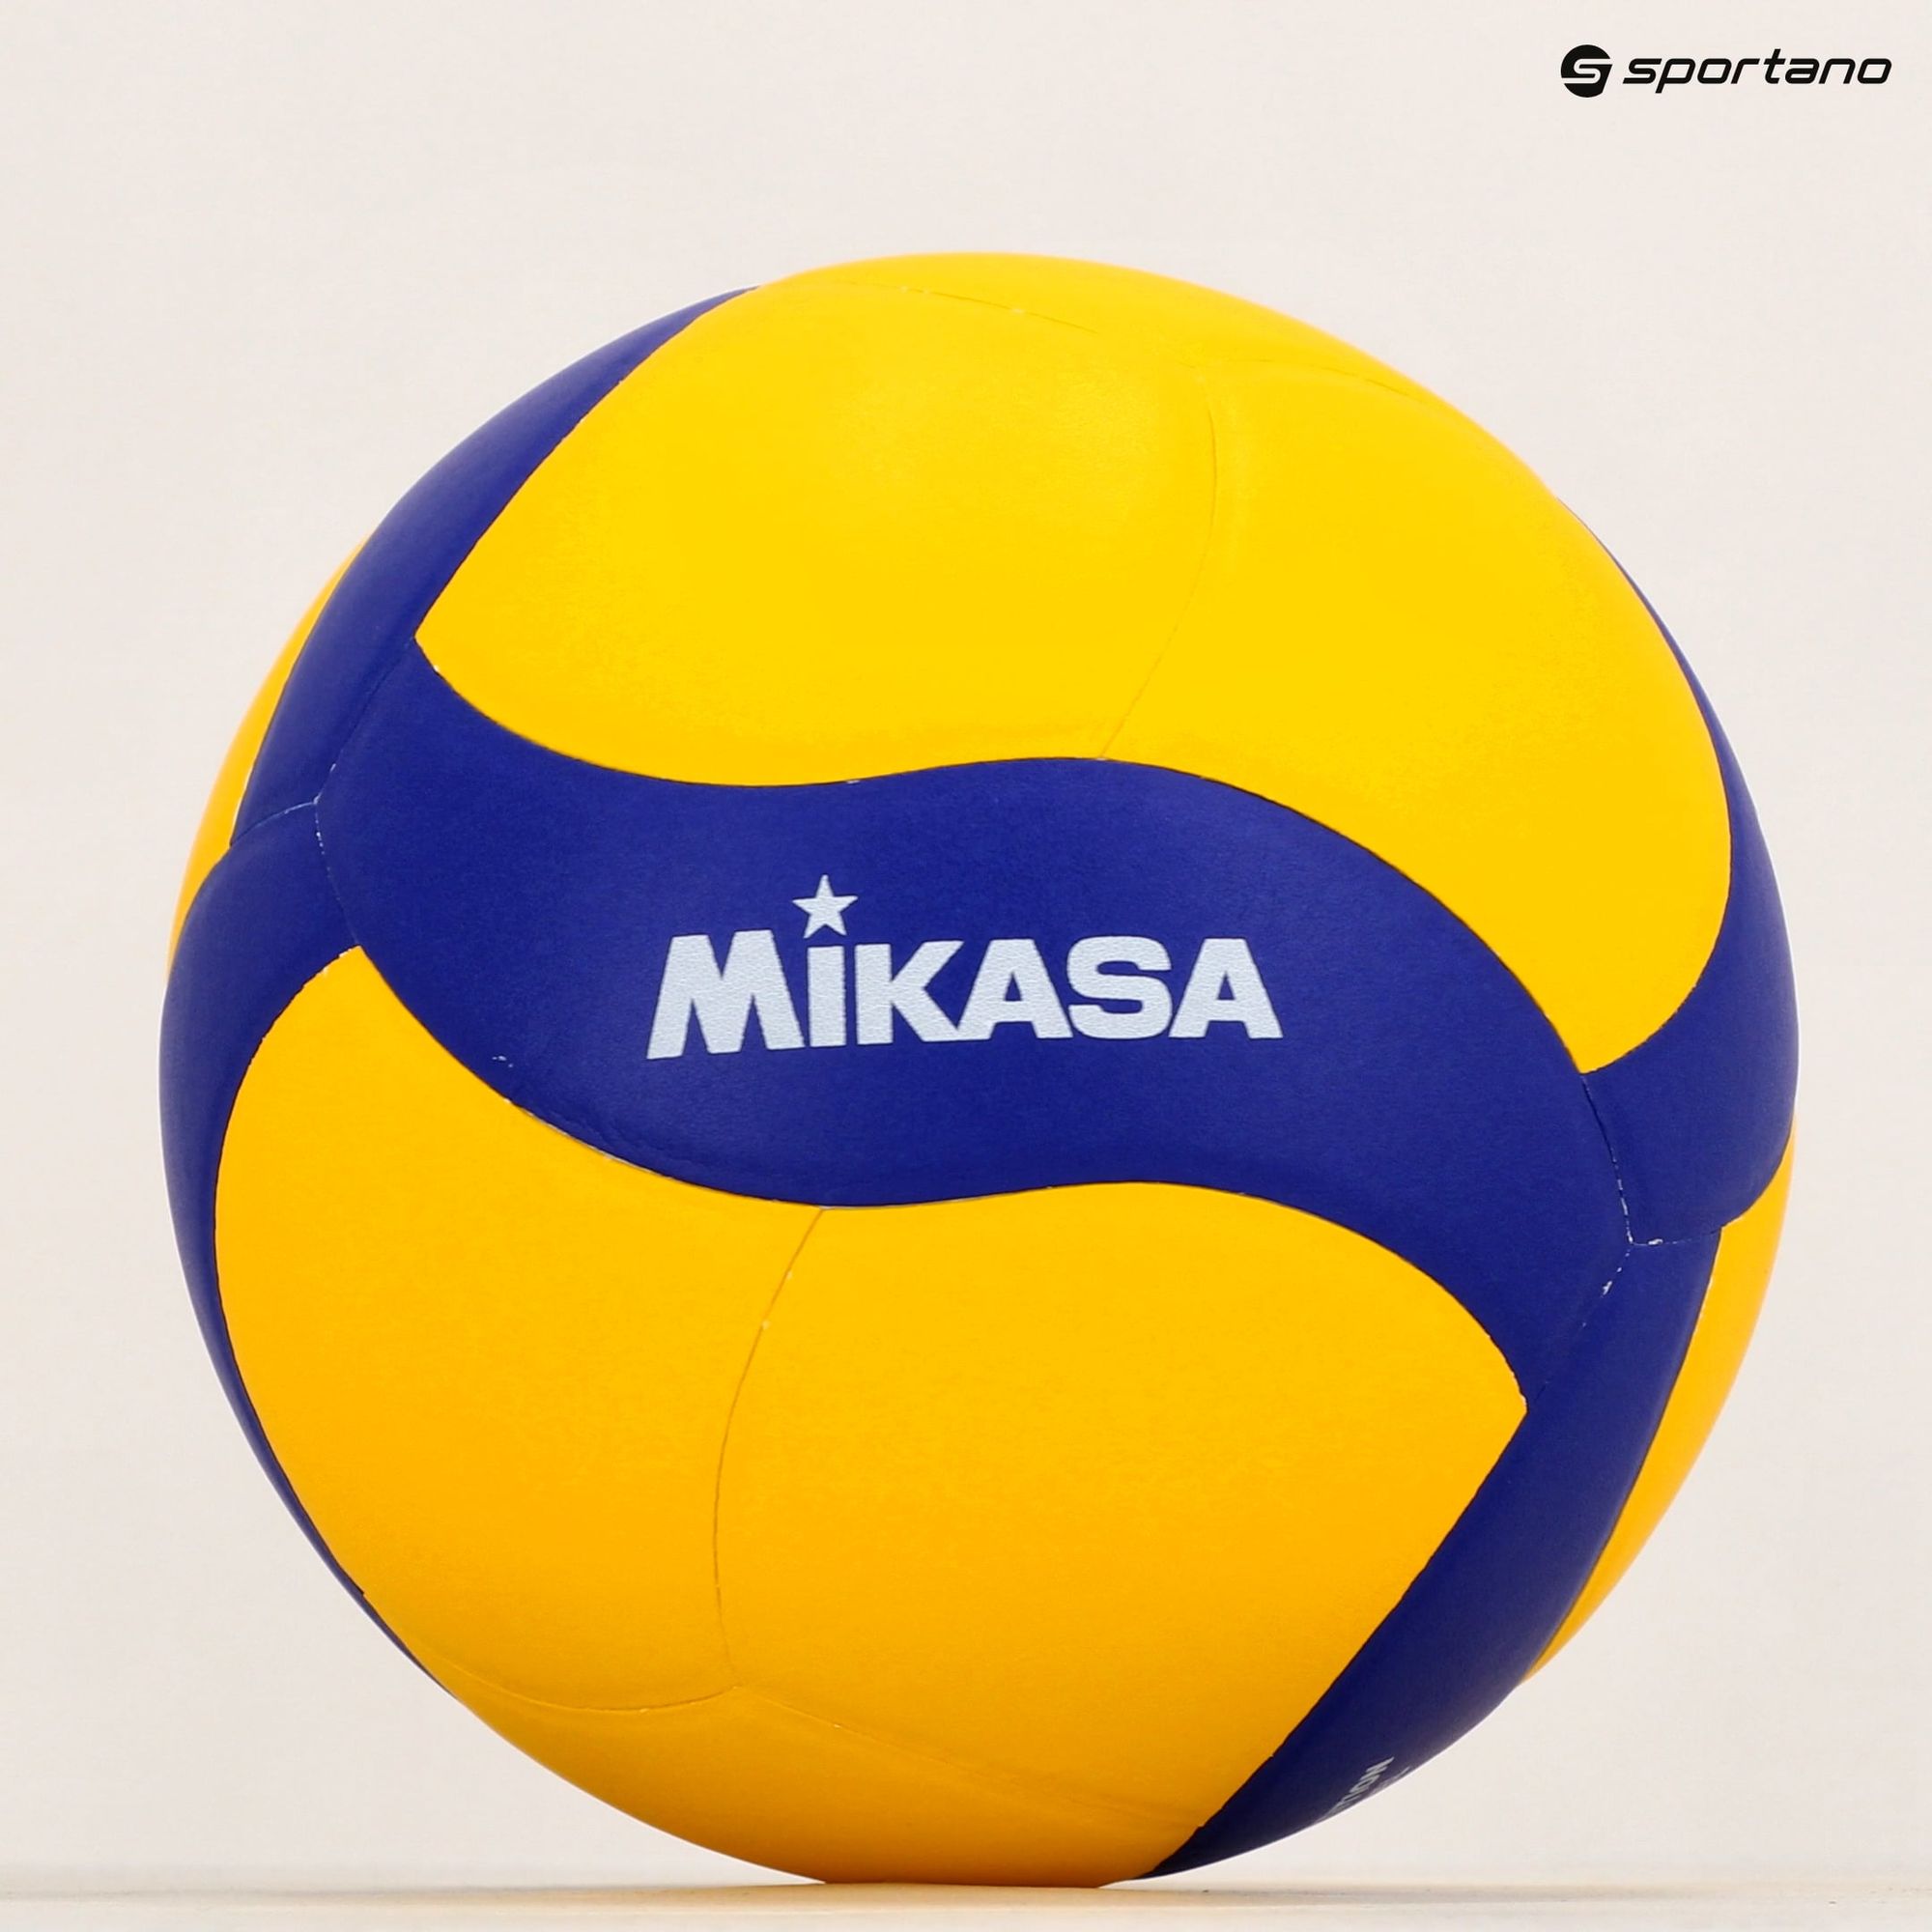 Piłka do siatkówki Mikasa V330W yellow/blue rozmiar 5 zdjęcie nr 5